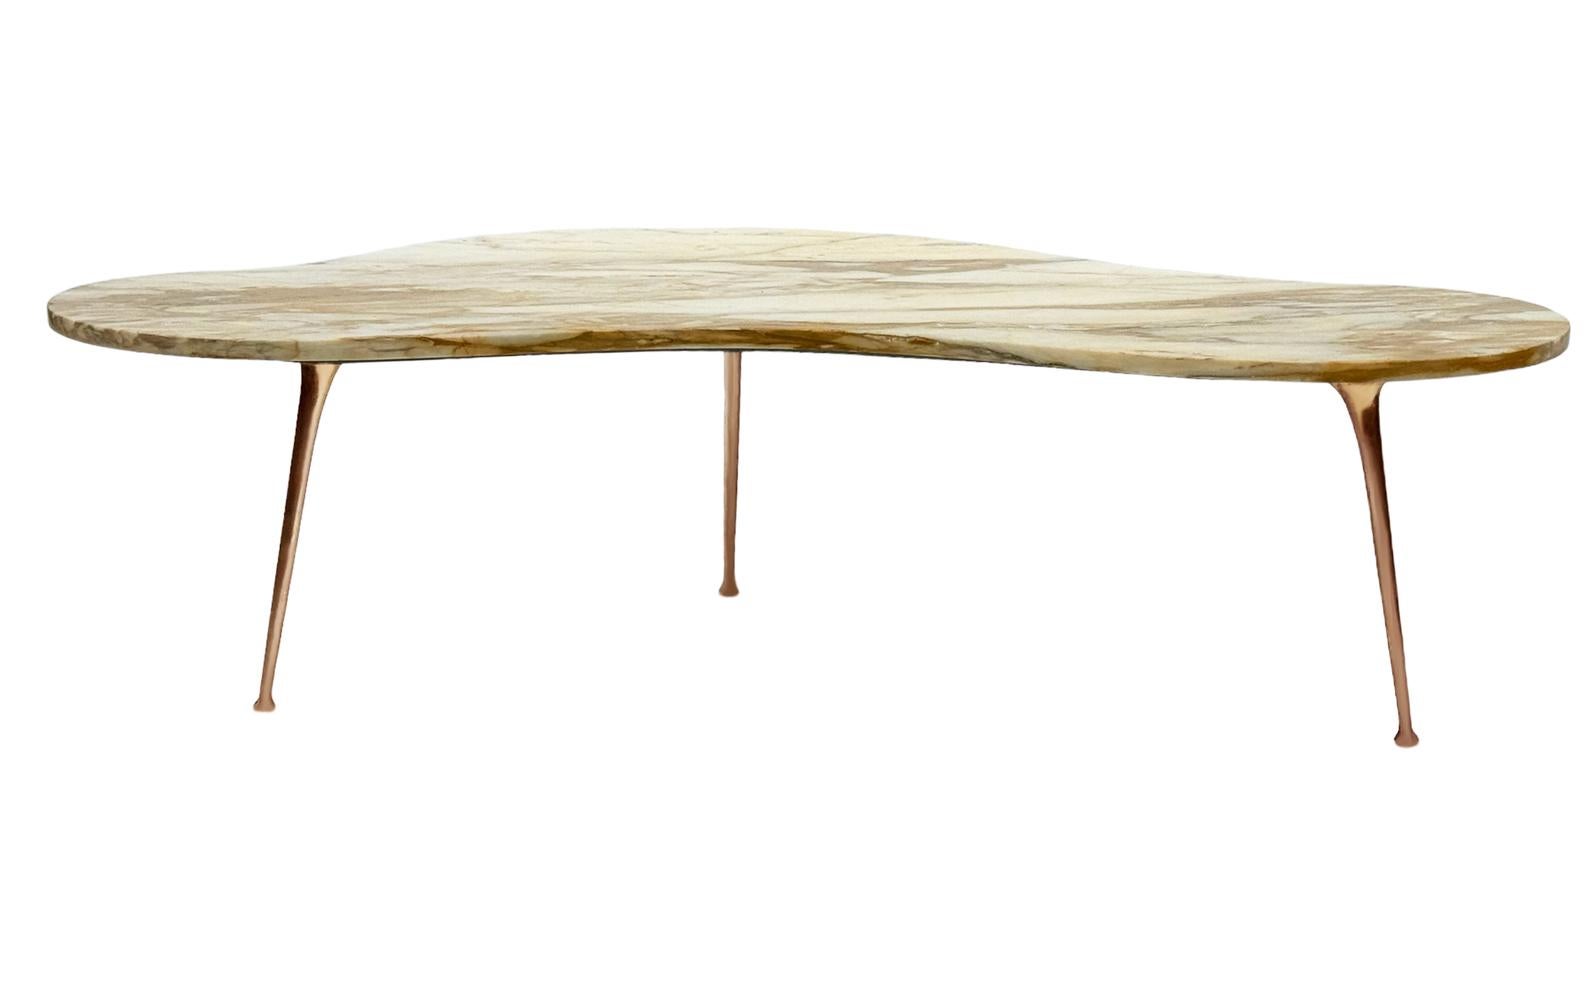 Une superbe table basse italienne datant des années 1960. Elle se caractérise par une forme libre irrégulière.  Plateau de forme rein en marbre beige, avec des pieds sexy en laiton.